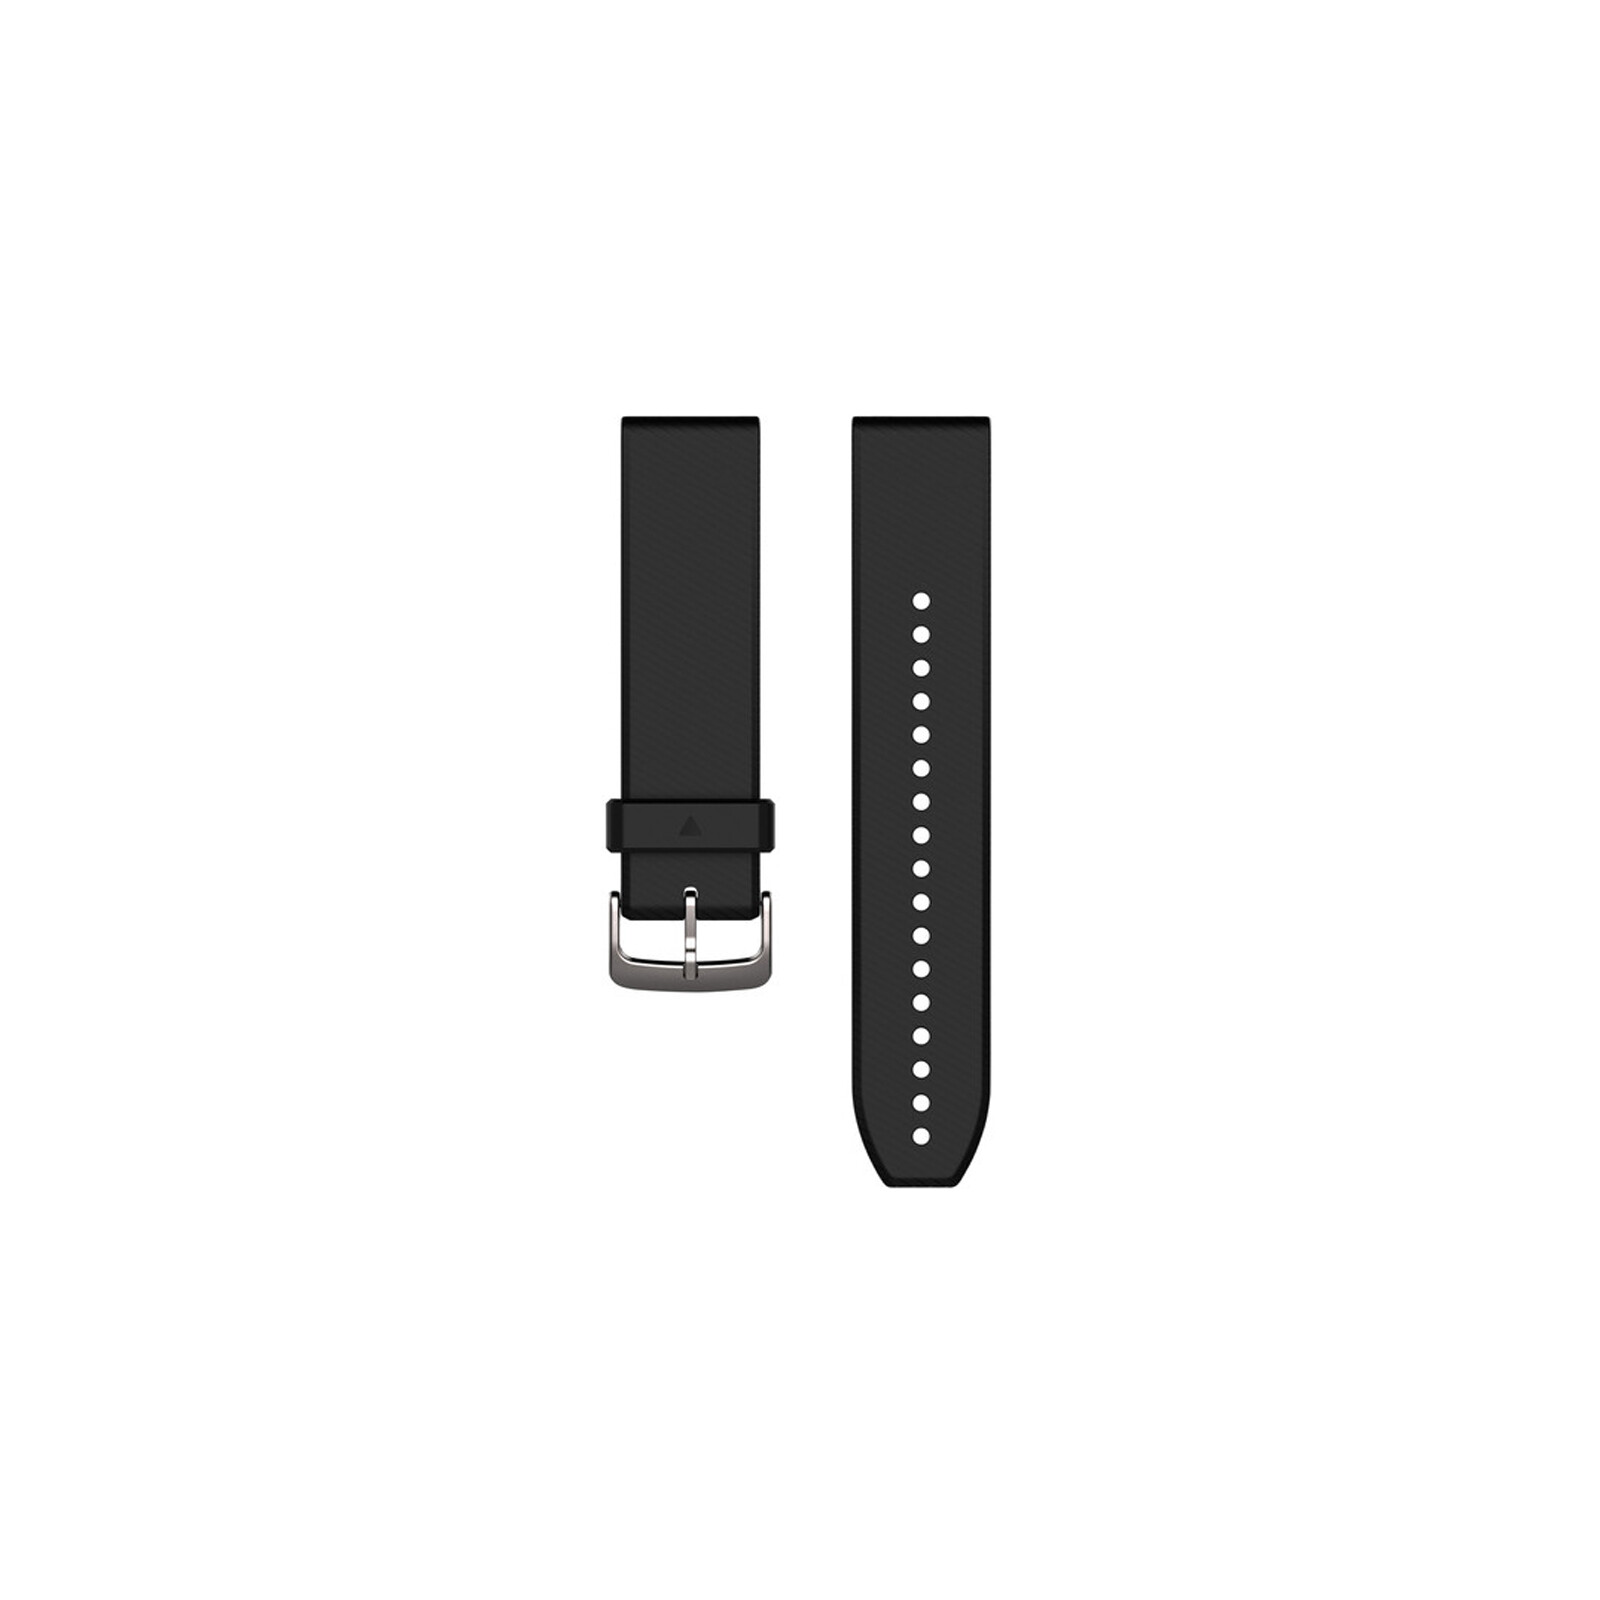 Garmin QuickFit 22 Band Silikon schwarz/silber